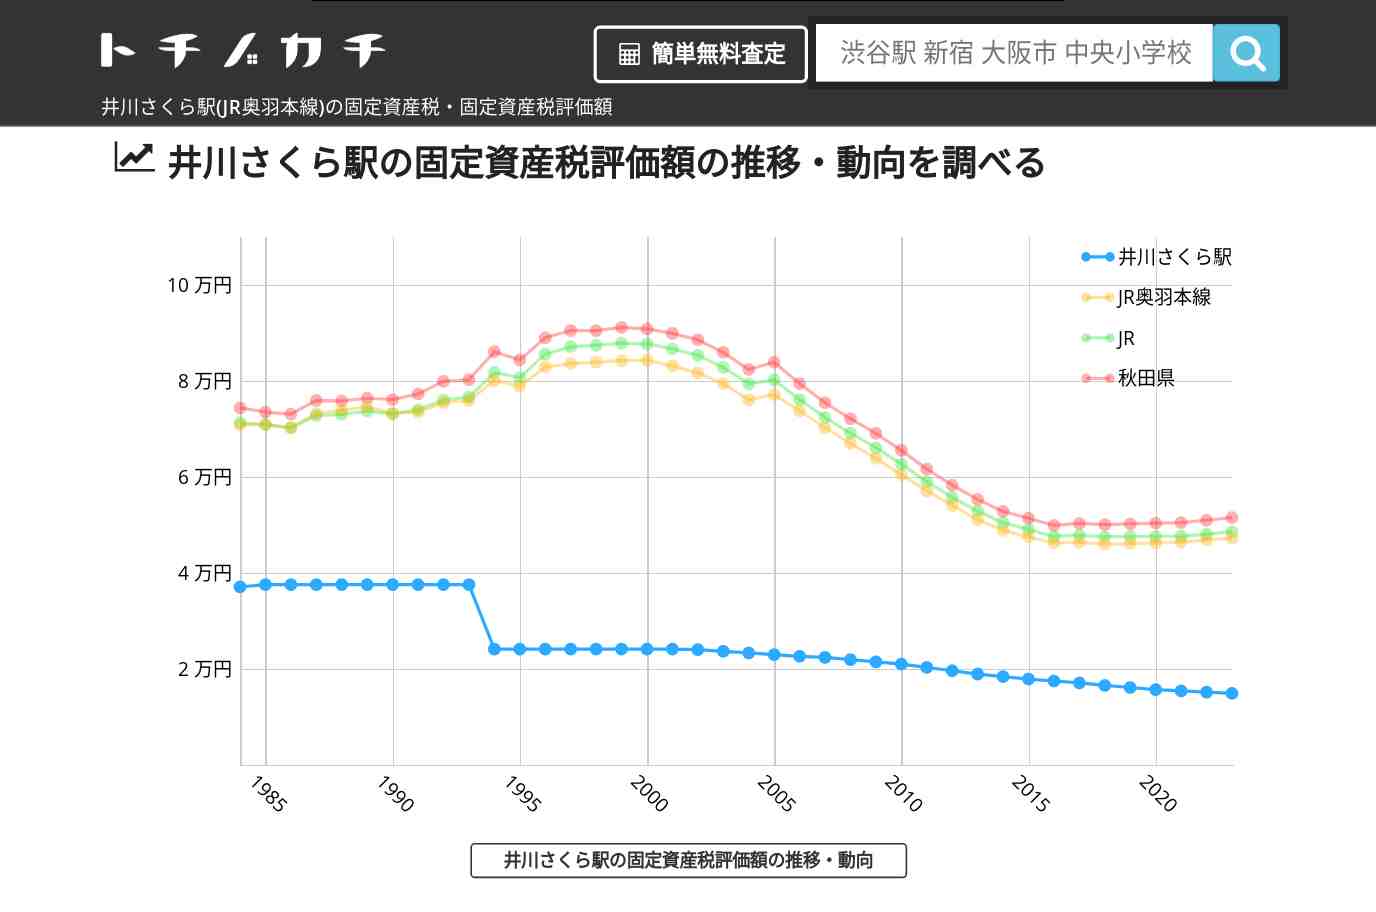 井川さくら駅(JR奥羽本線)の固定資産税・固定資産税評価額 | トチノカチ